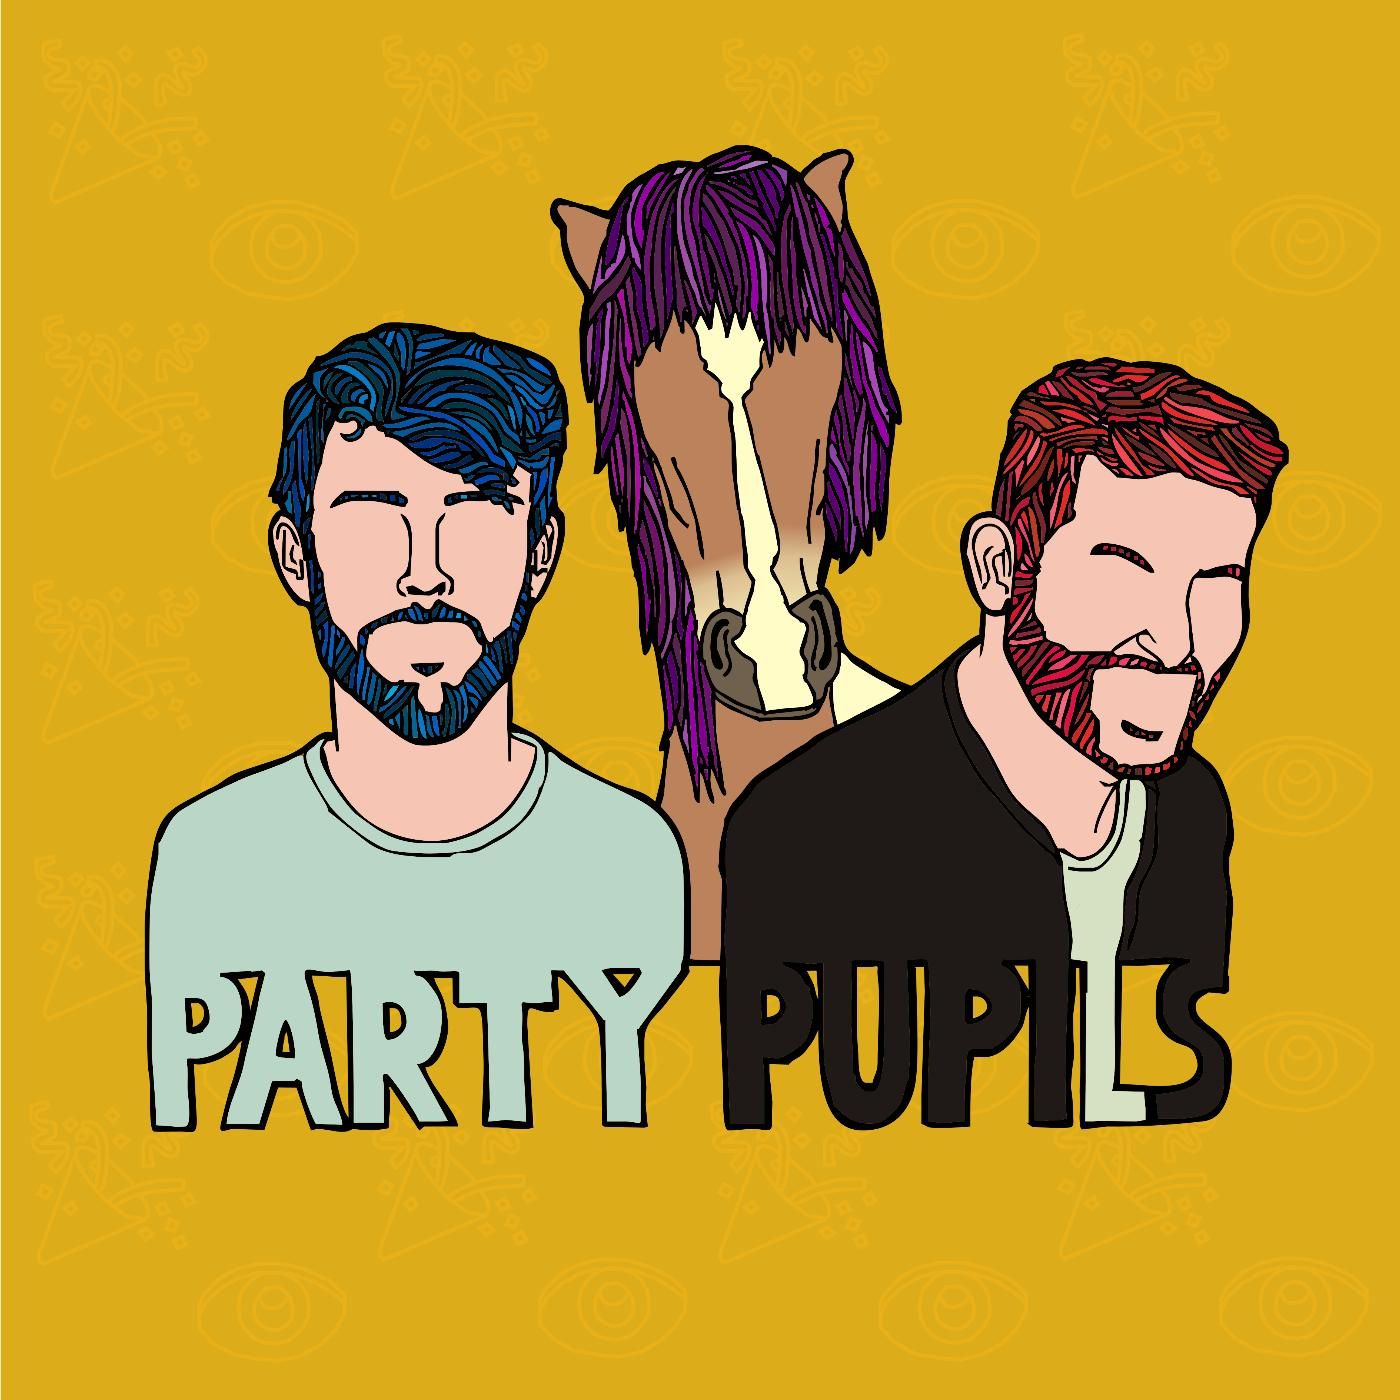 Party Pupils - Pony (신남, 신비, 경쾌, 활기, 비트, 흥겨움)